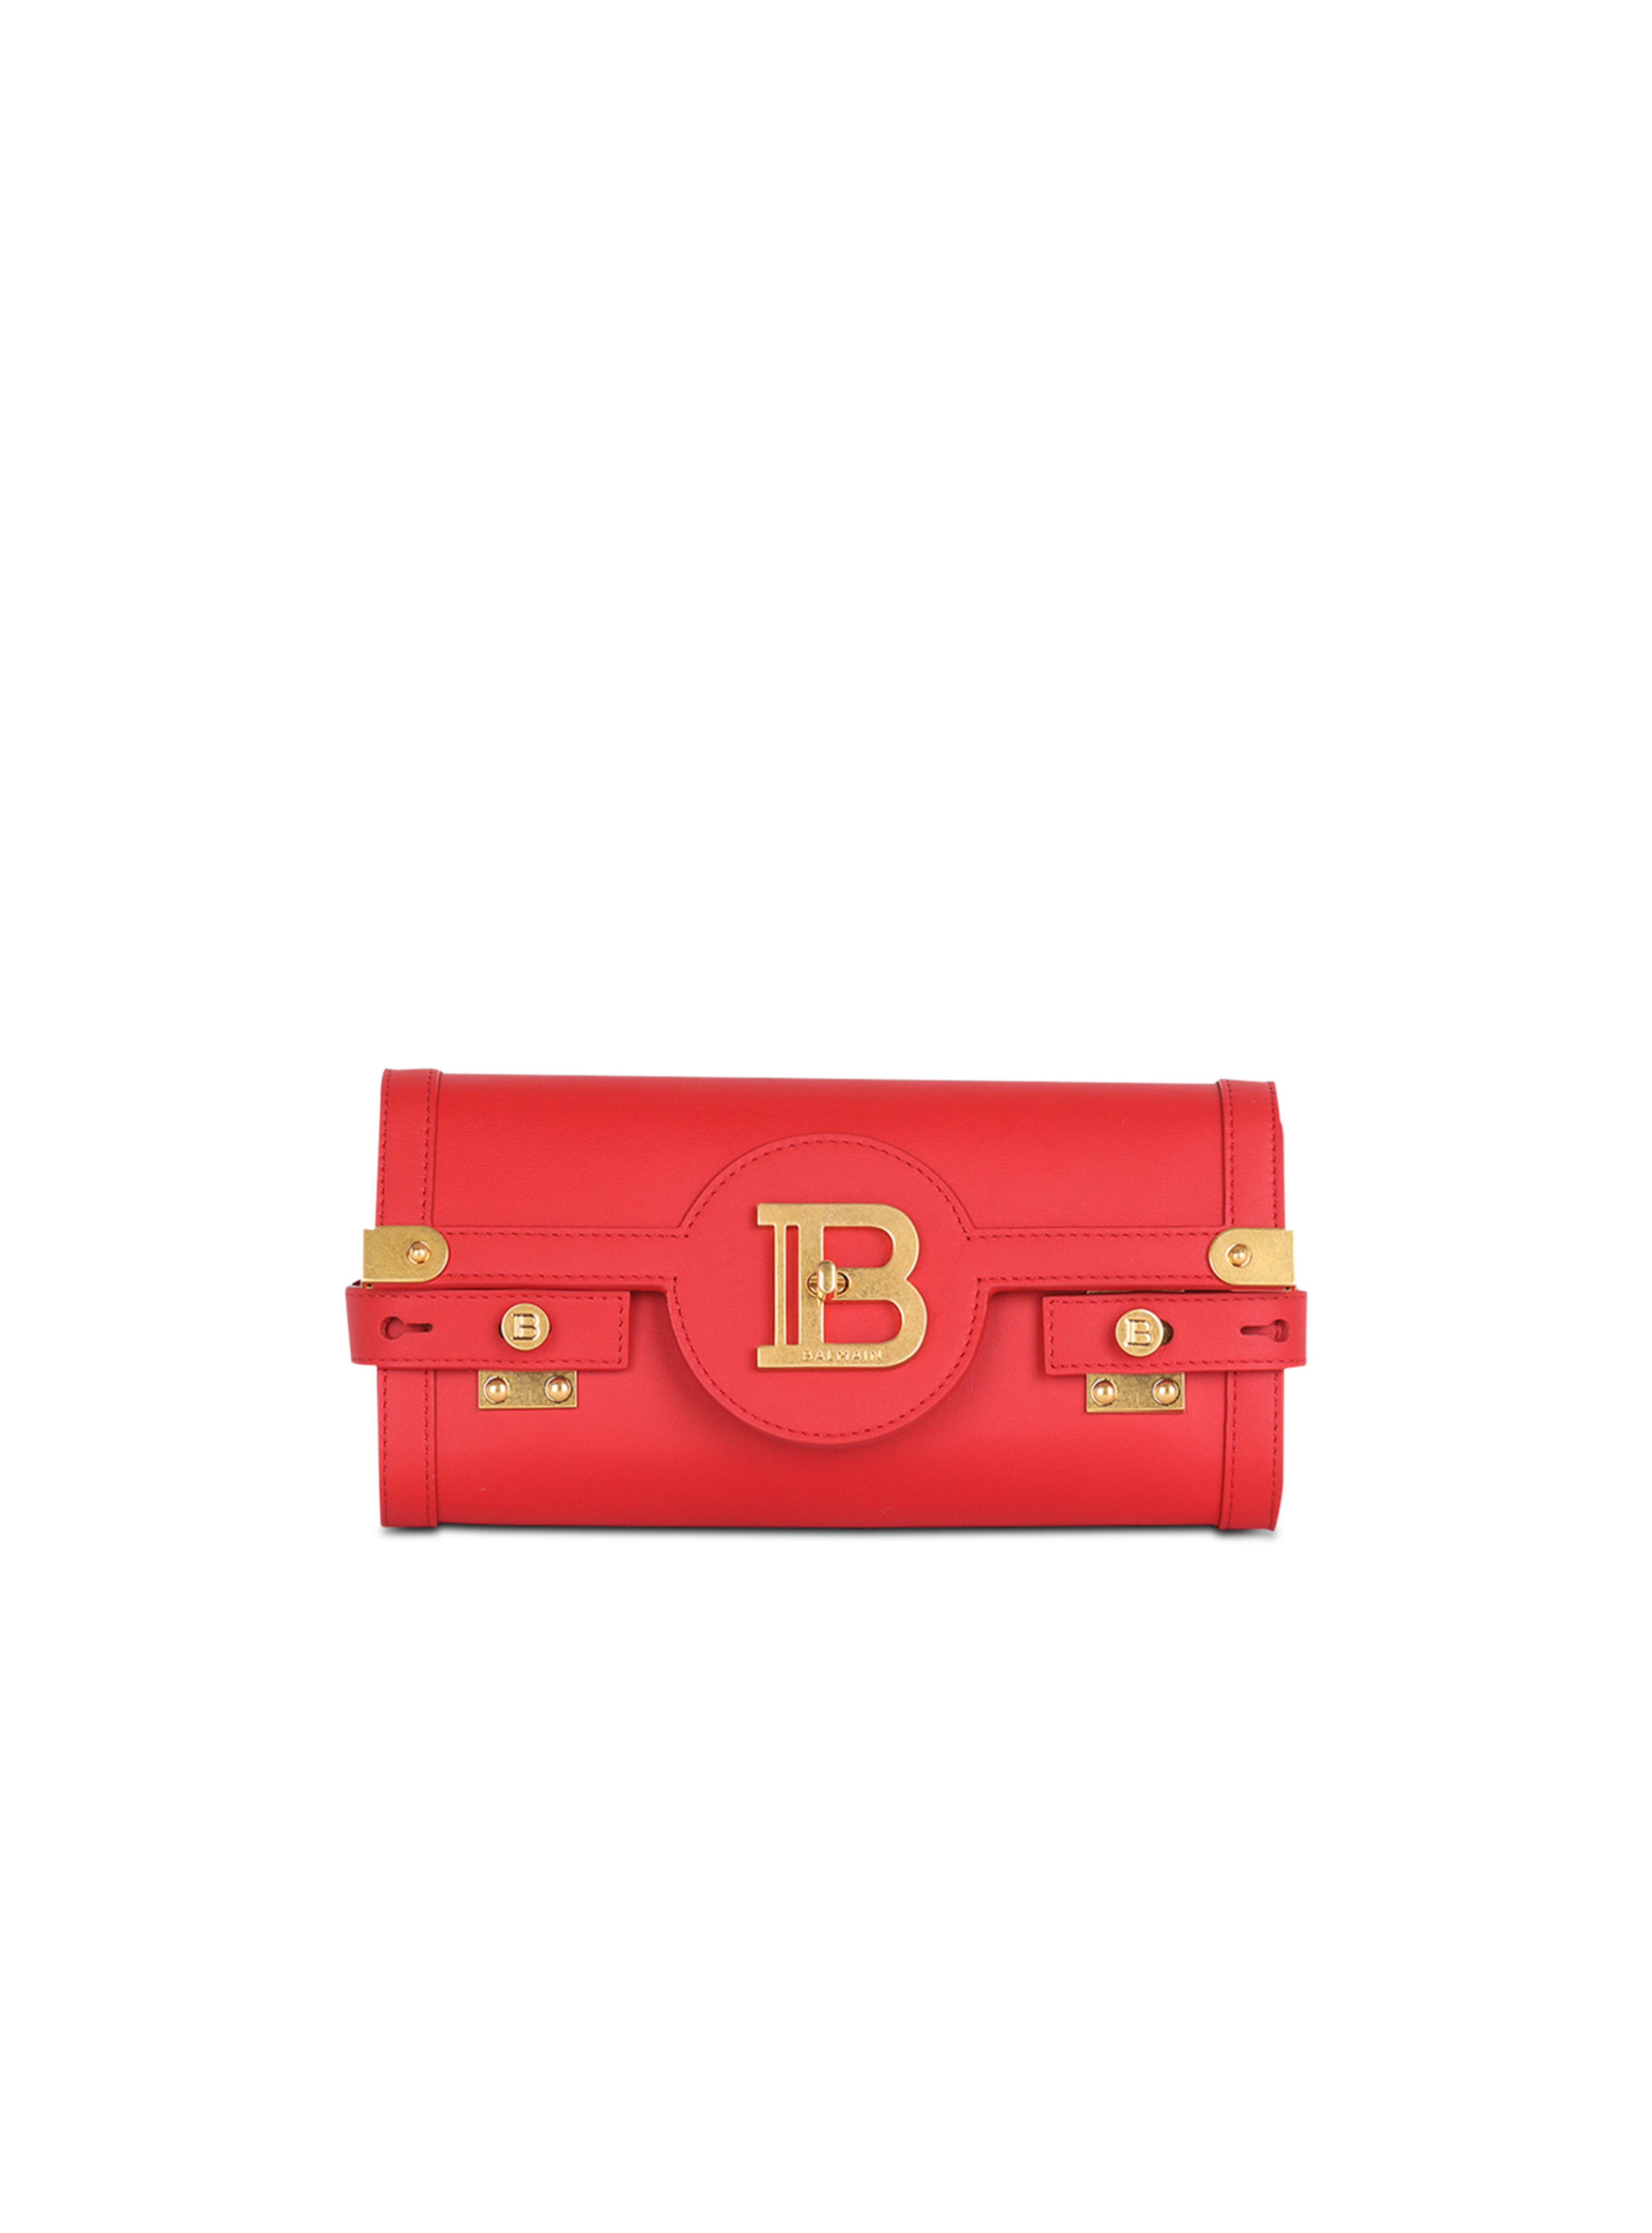 스무드 레더 B-Buzz 23 클러치 백, 빨간색